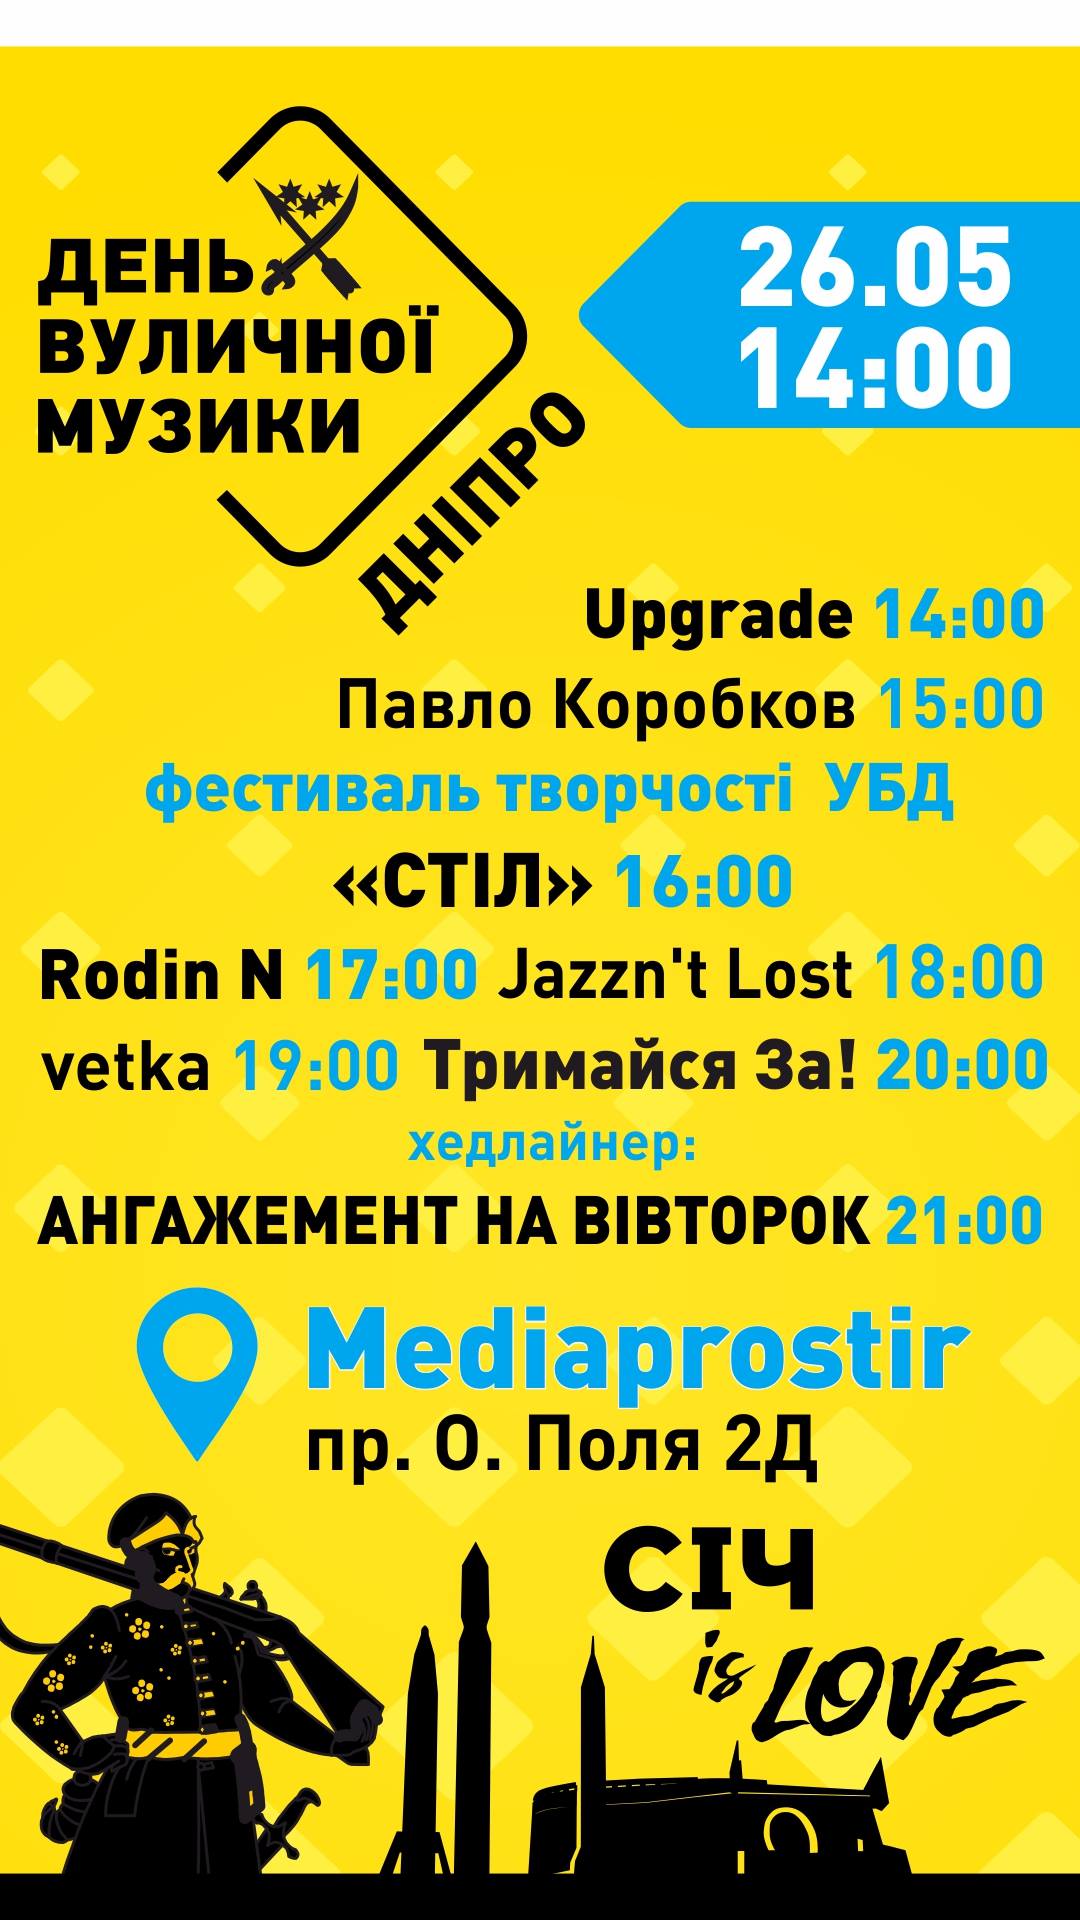 Фестиваль уличной музыки Днепр, 26.05.2019, цена, купить билеты. Афиша Днепра